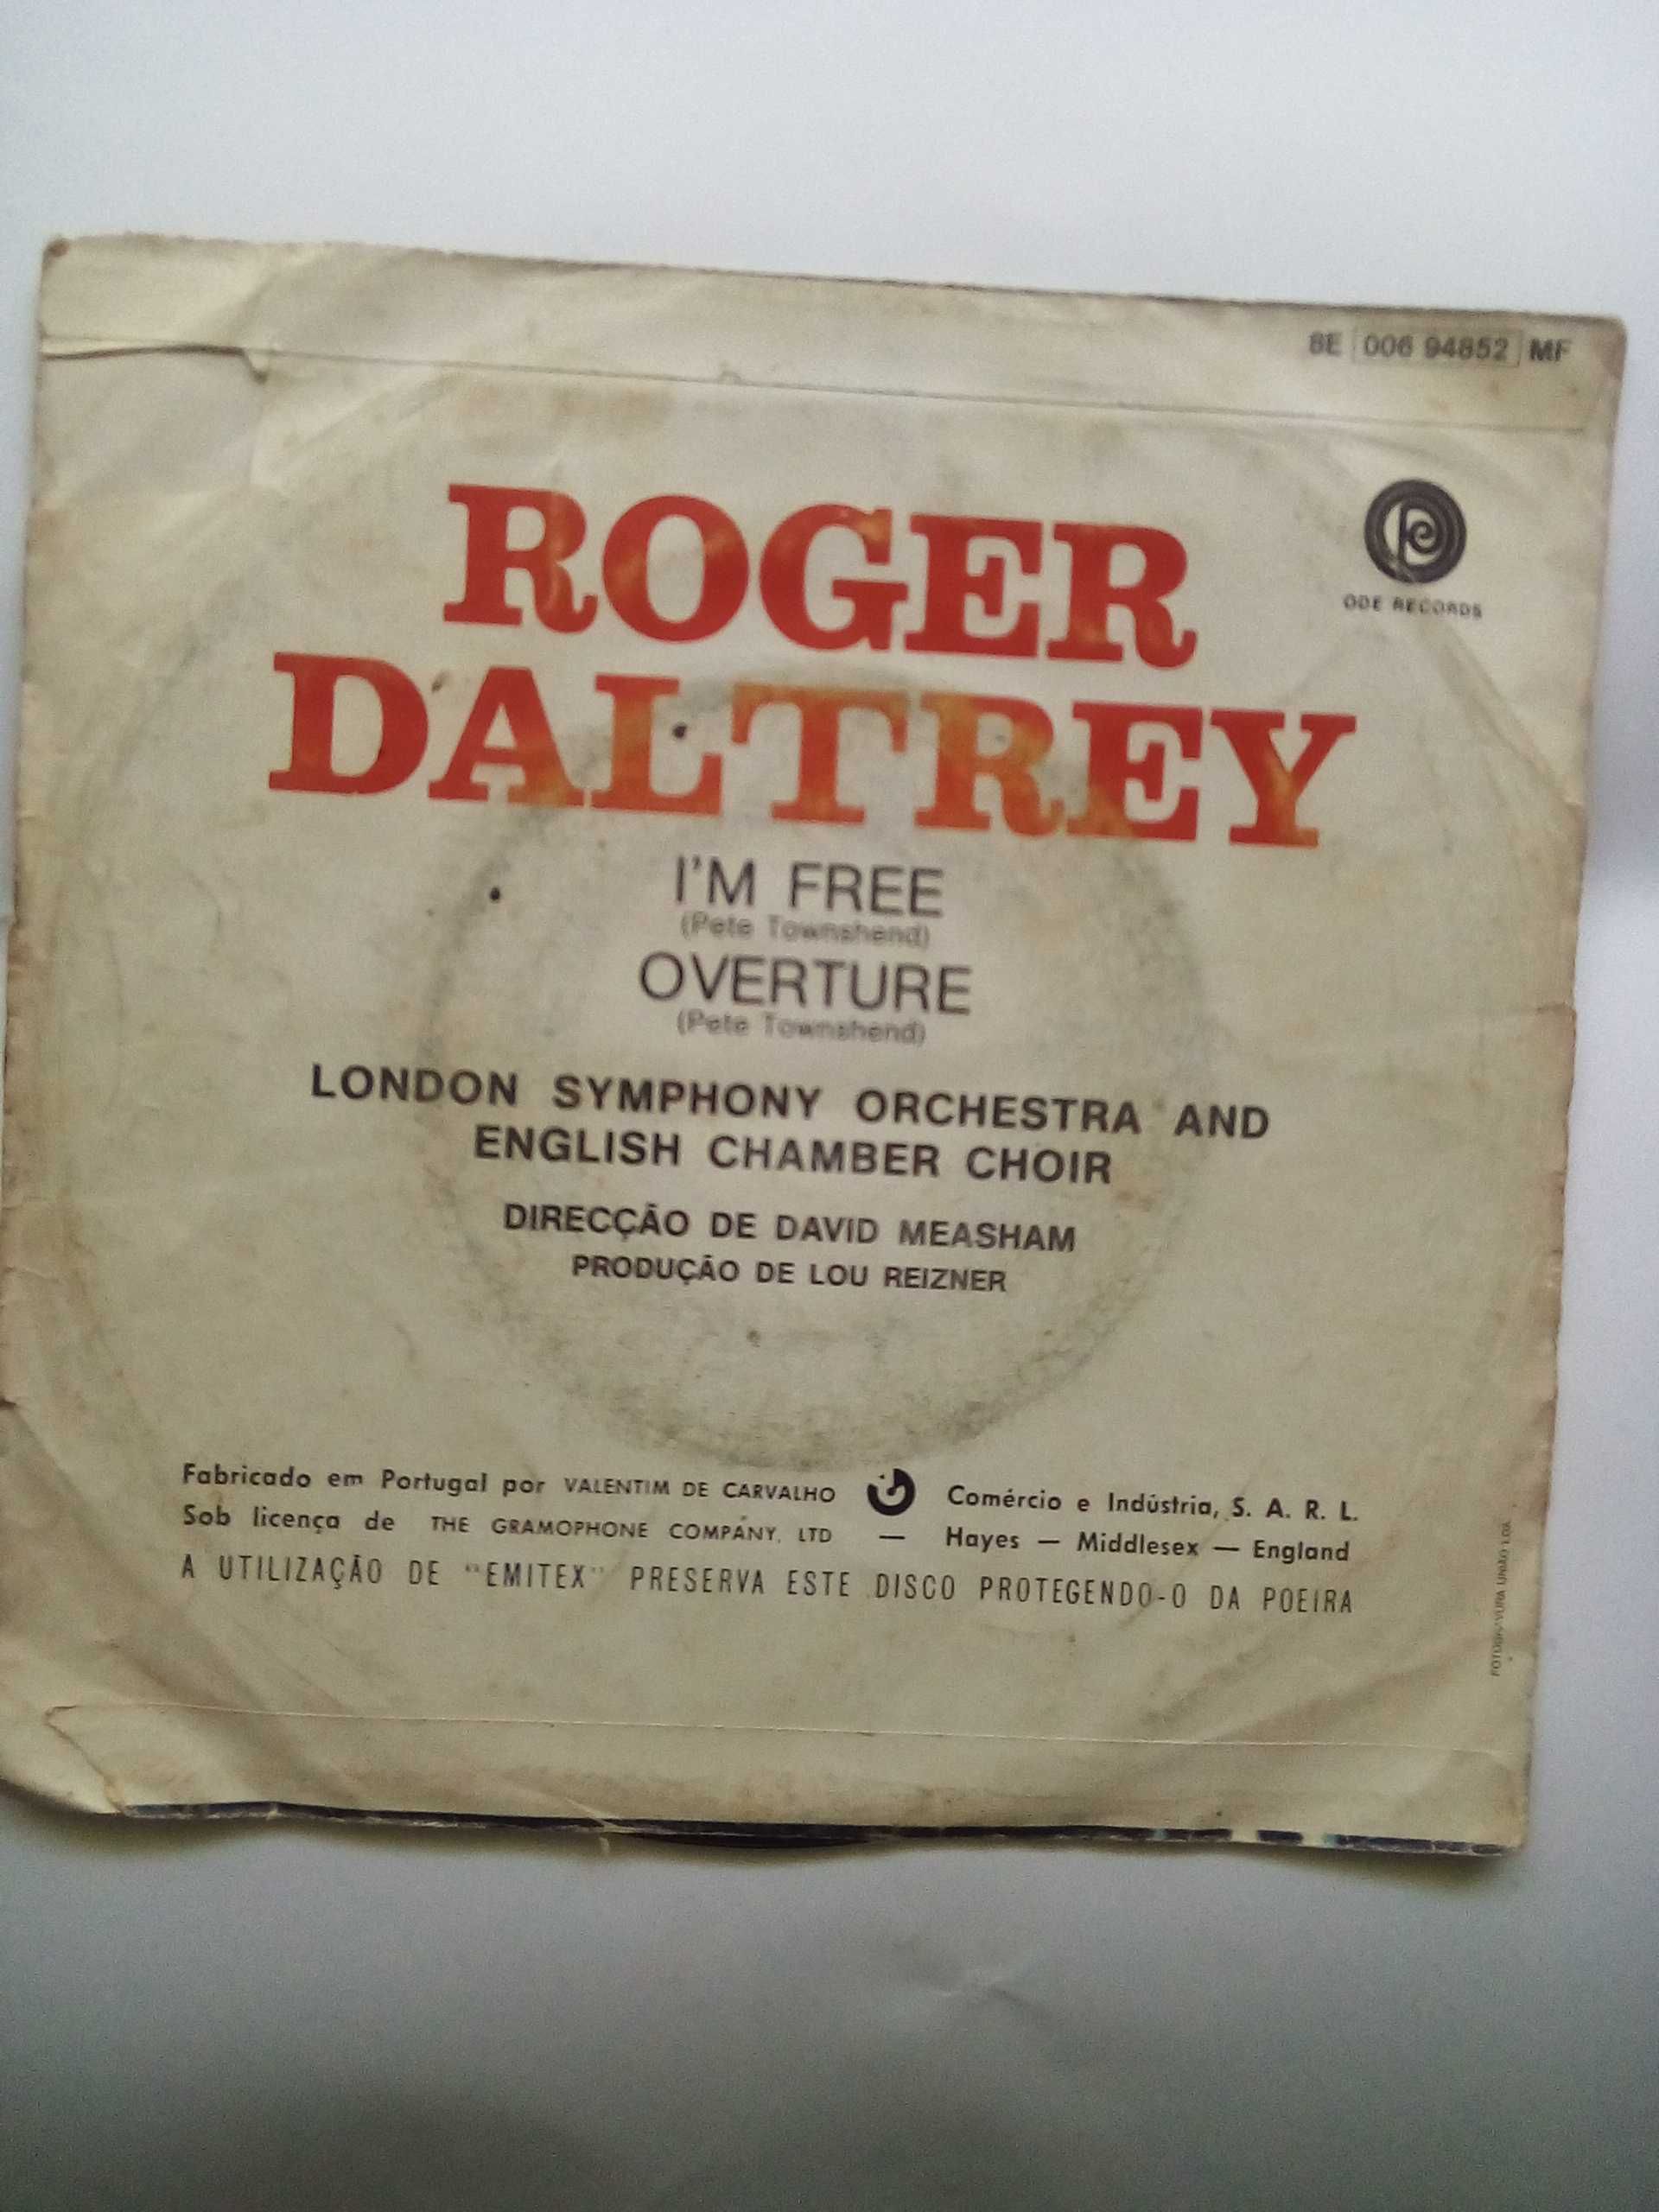 Vinil 45 rpm de Roger Daltrey, I'm free